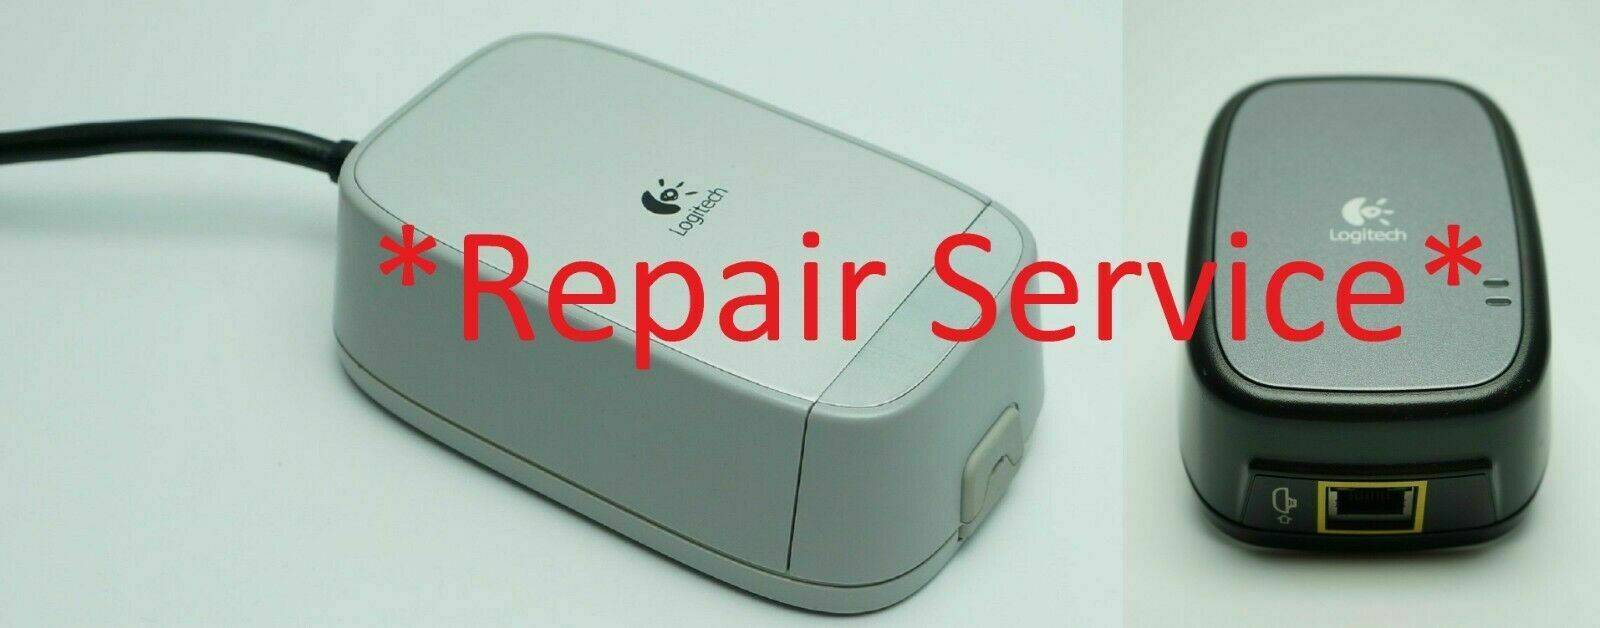 750e *Repair Service* Reparatur Logitech Alert 700e 